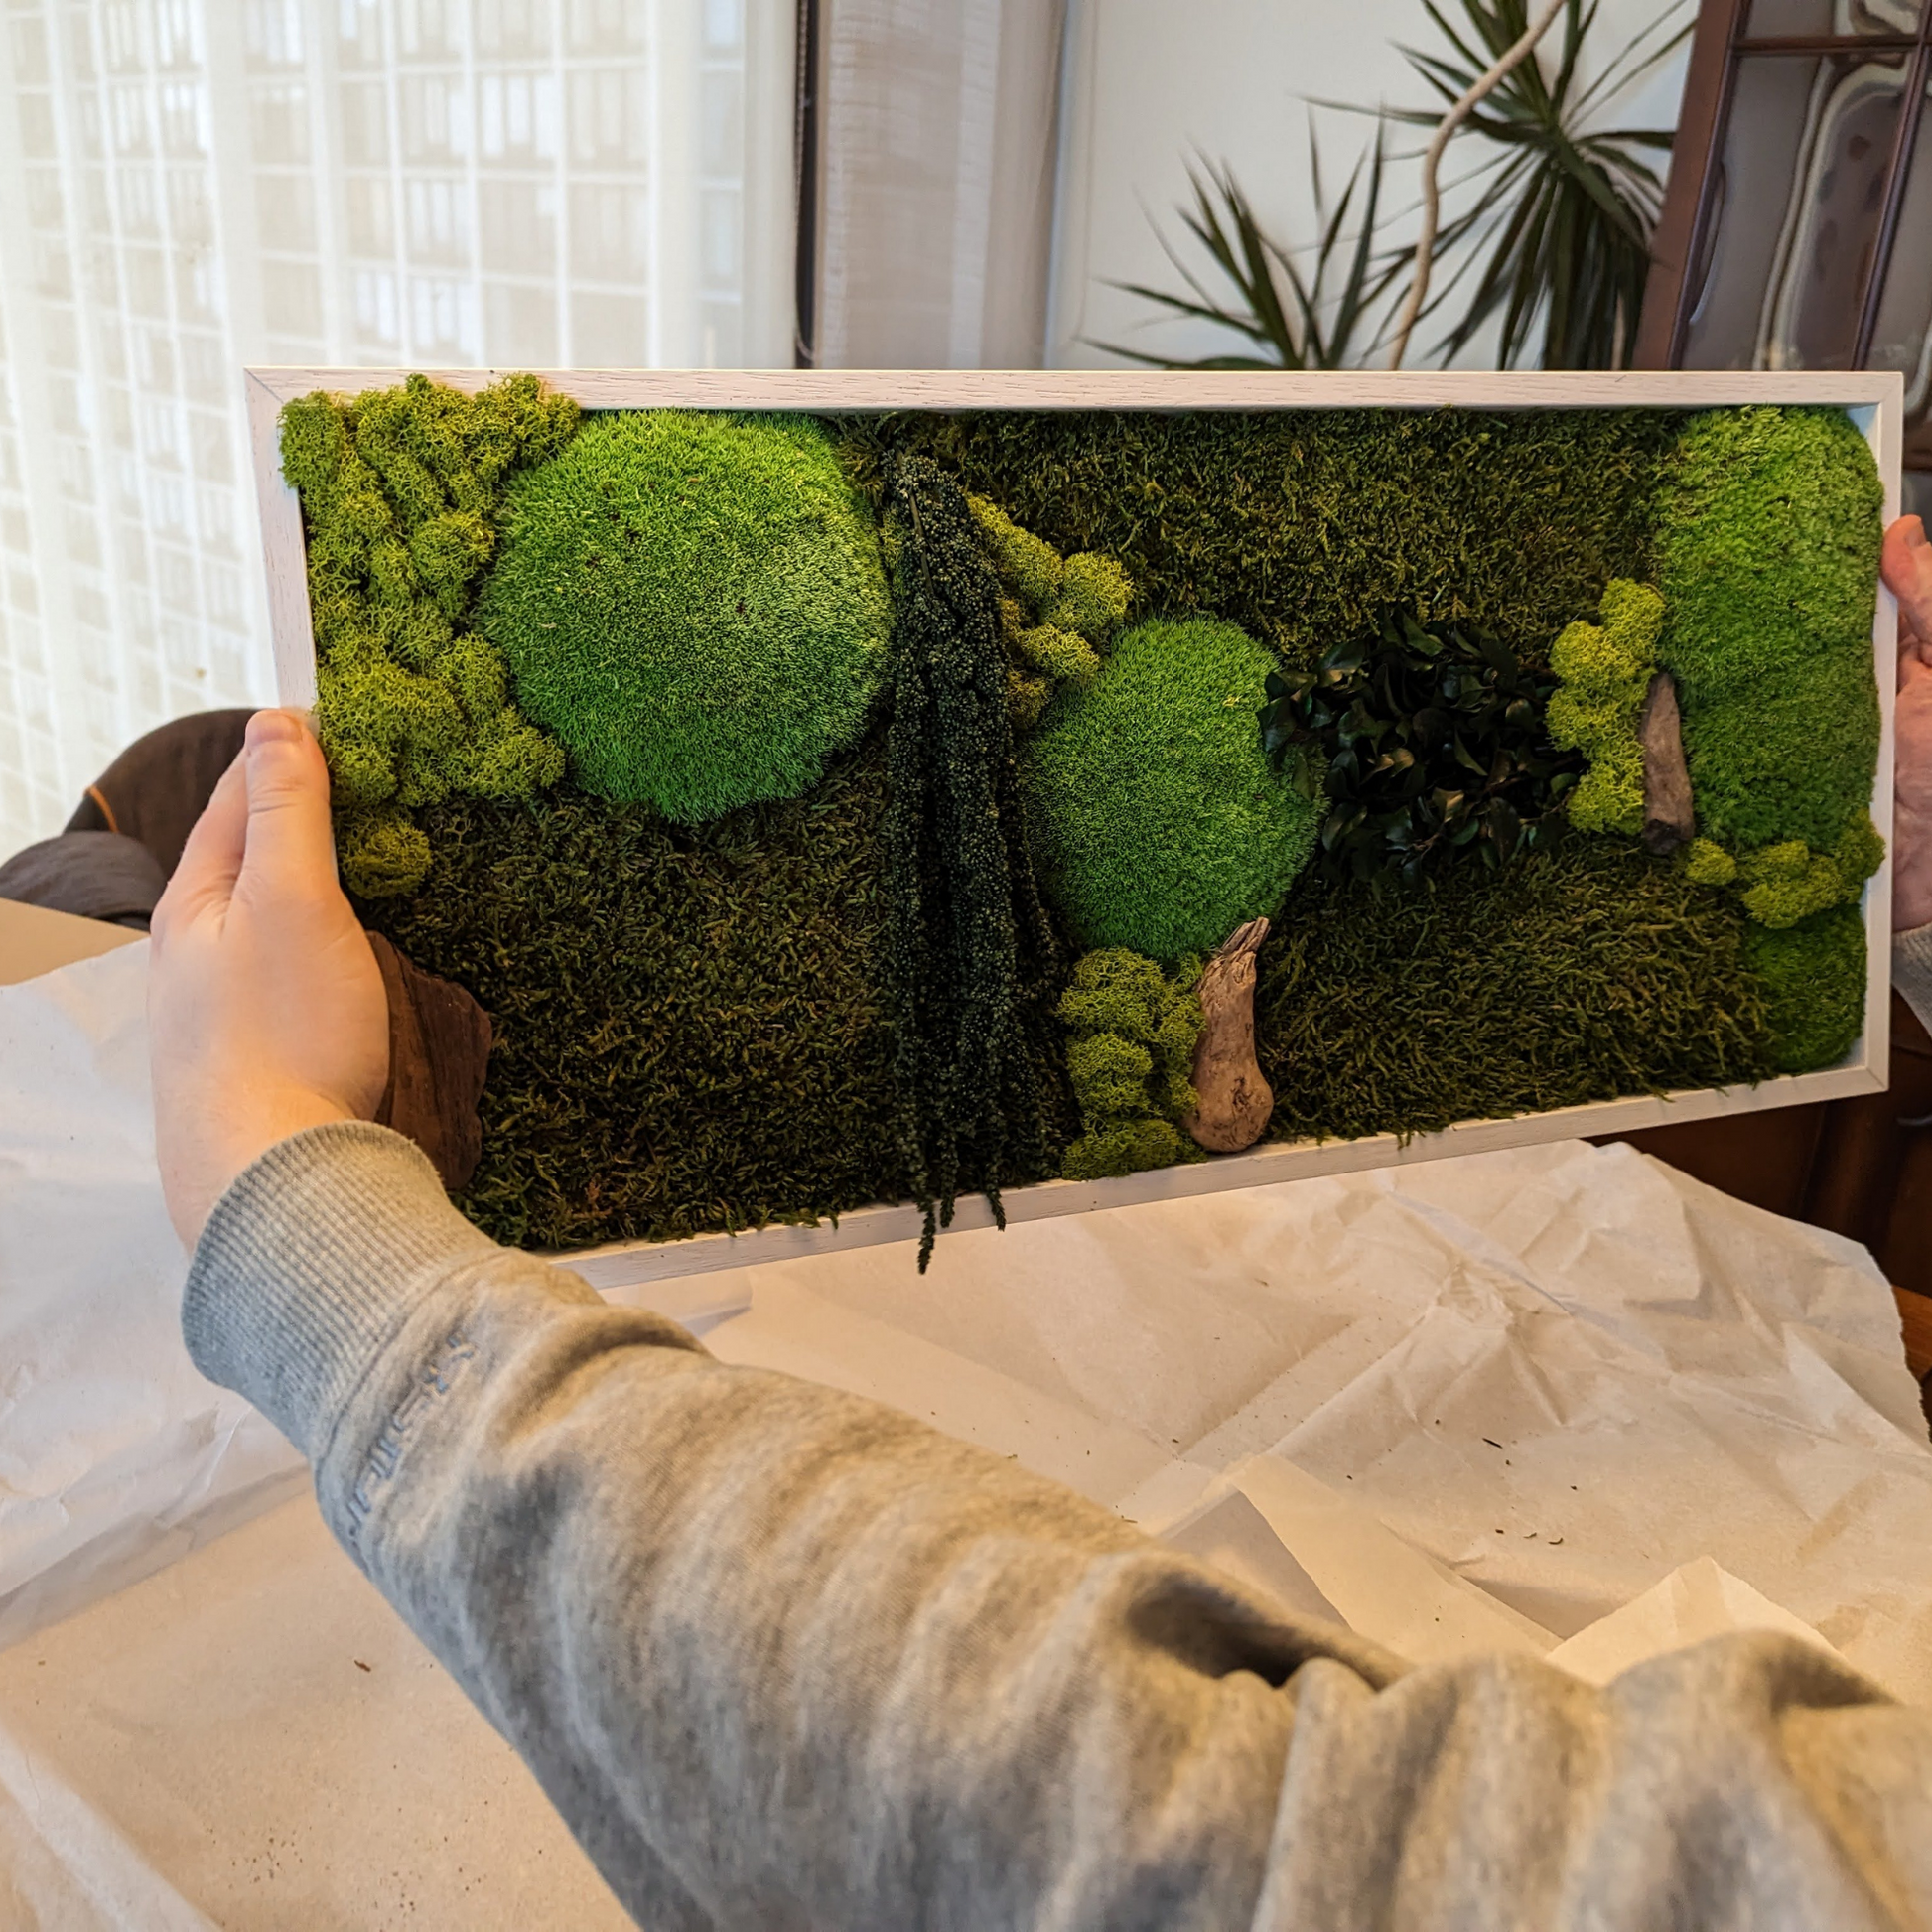 Stunning Moss Wallart - Wooden Frame with Preserved Moss - Sprigbox